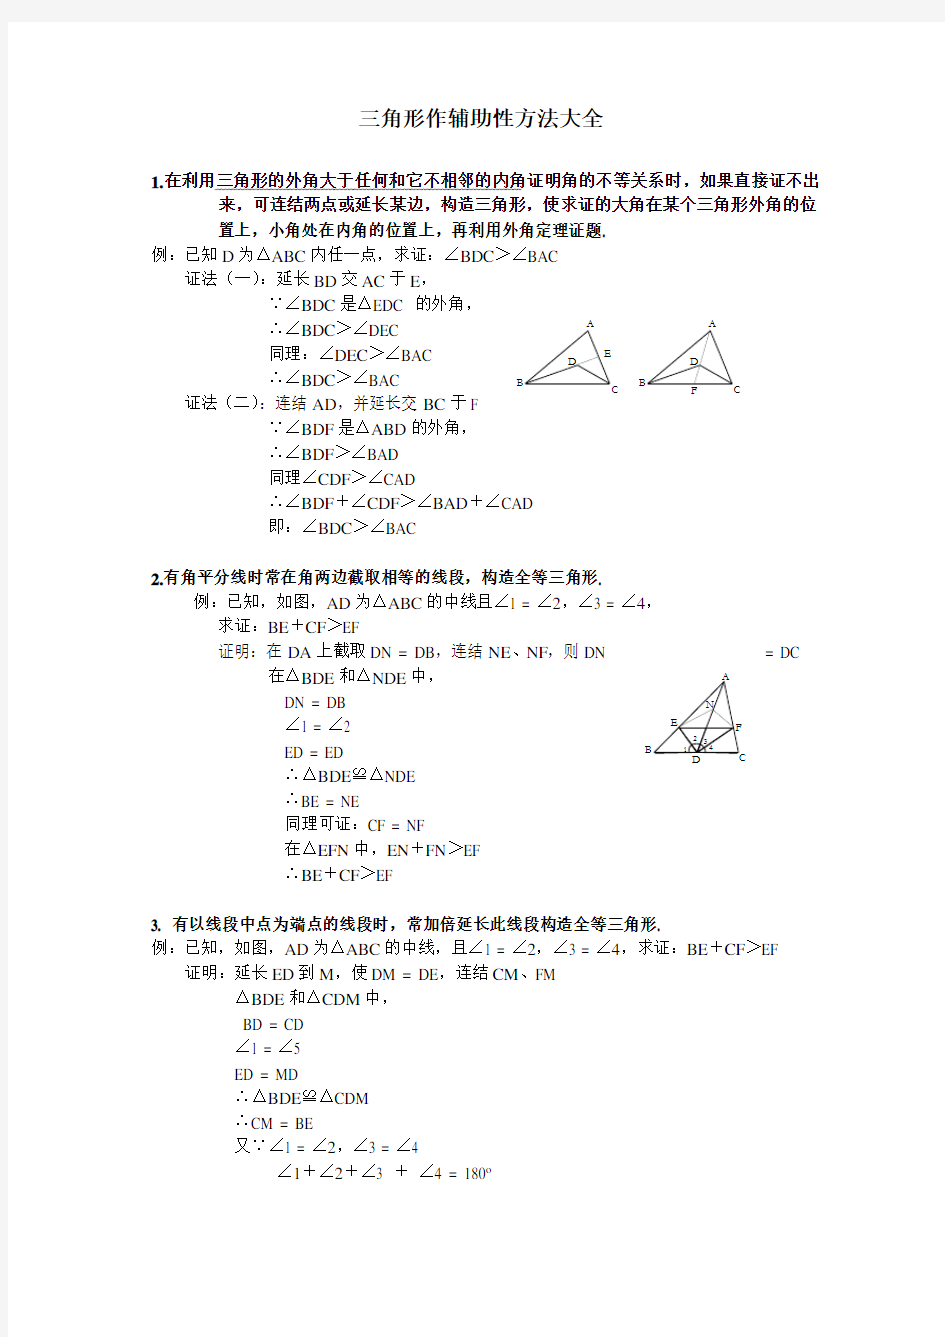 【强烈推荐】八年级数学三角形辅助线大全(精简、全面)